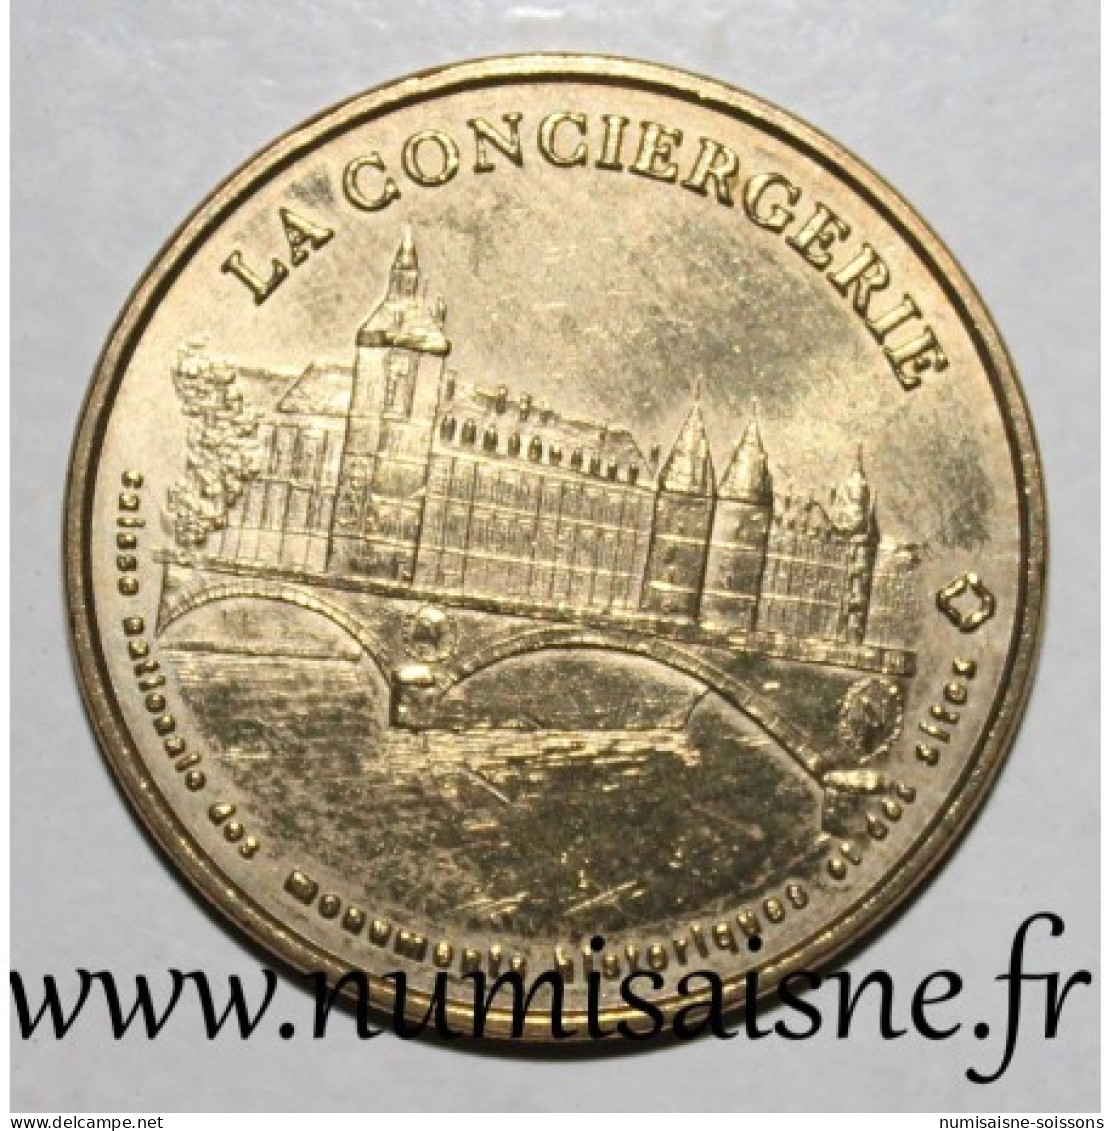 75 - PARIS - LA CONCIERGERIE - Monnaie De Paris - 1998 - Zonder Datum